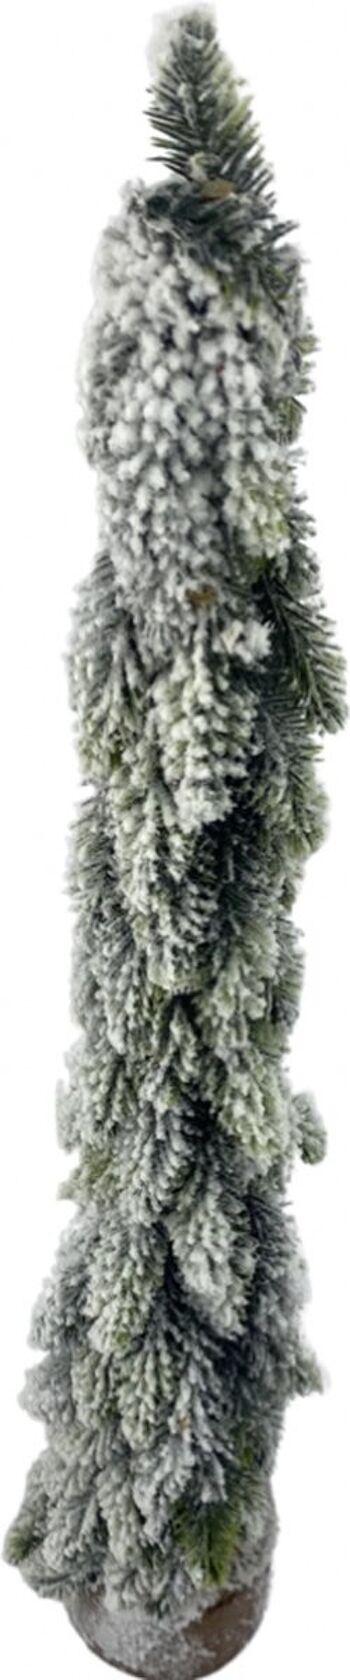 Kerstboom op houten voet - Sneeuw | 46cm | sfeervolle kerst decoratie | Décoratif kunst kerstboom | Witte Kerst | Rood 4